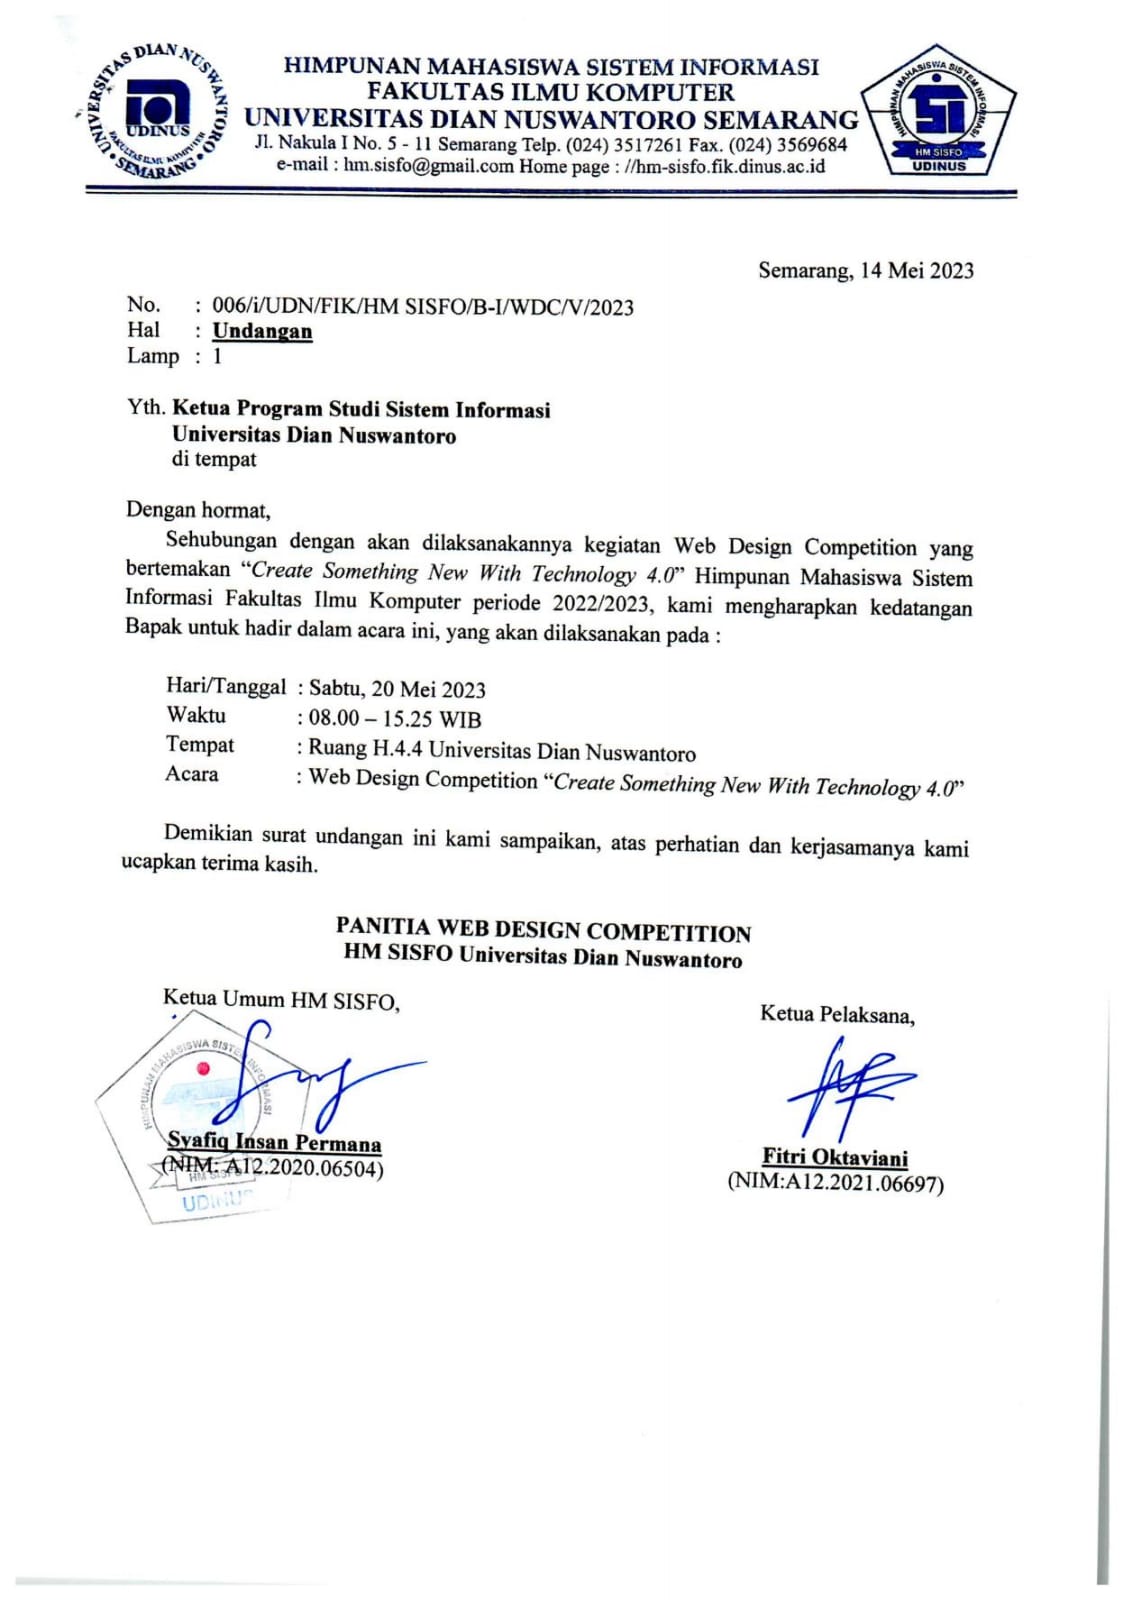 Surat Undangan Ketua Program Studi Sistem Informasi Universitas Dian Nuswantoro